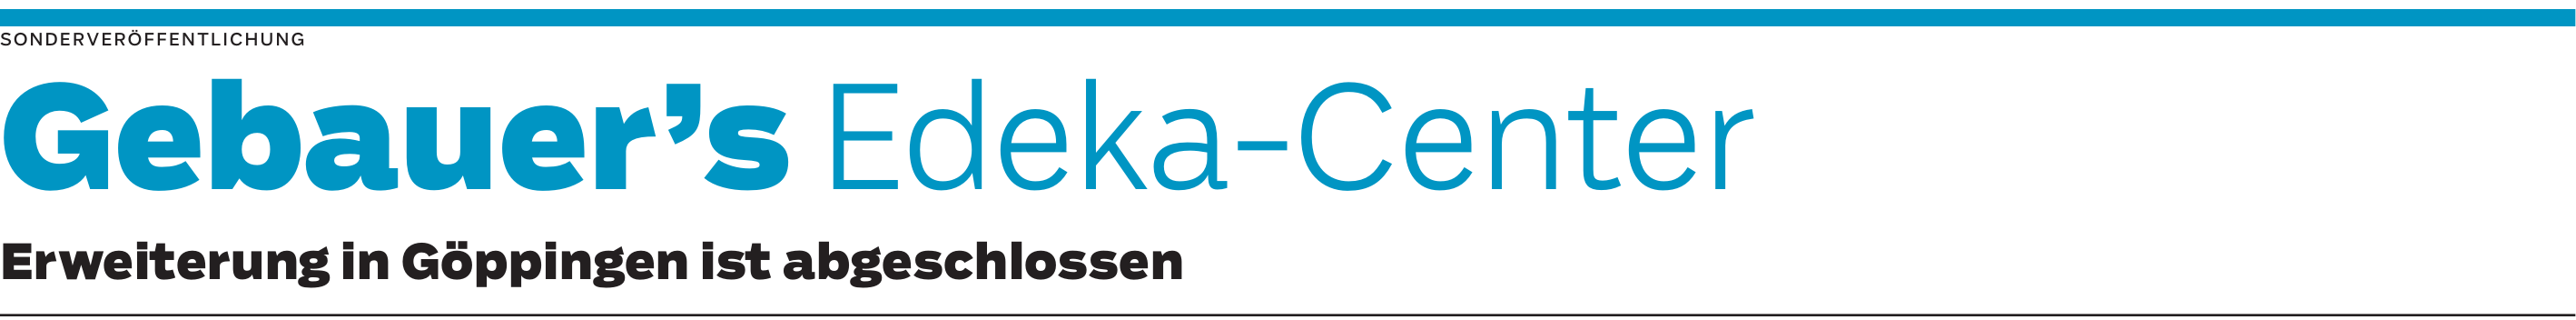 Edeka-Center Göppingen: Große Auswahl in Gebauer’s-Qualität